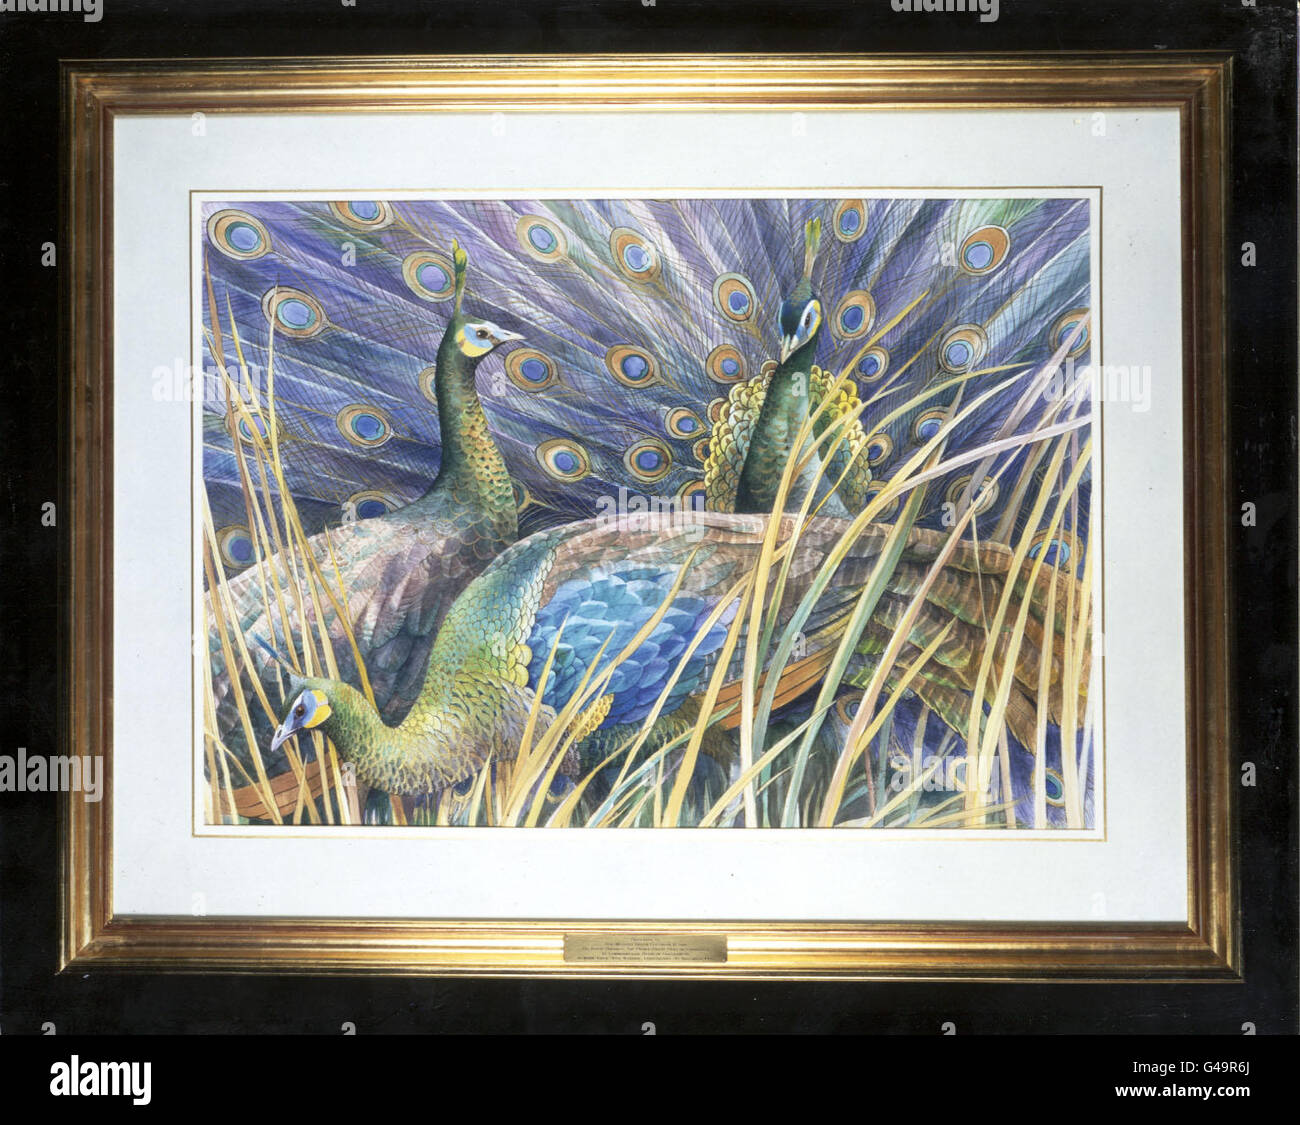 Paons verts (PavoMuticus). L'une des deux peintures d'espèces d'oiseaux menacées présentées par l'artiste britannique Emma Foulls à la Reine et au duc d'Édimbourg par les dirigeants du Commonwealth réunis à Édimbourg ce soir. Banque D'Images